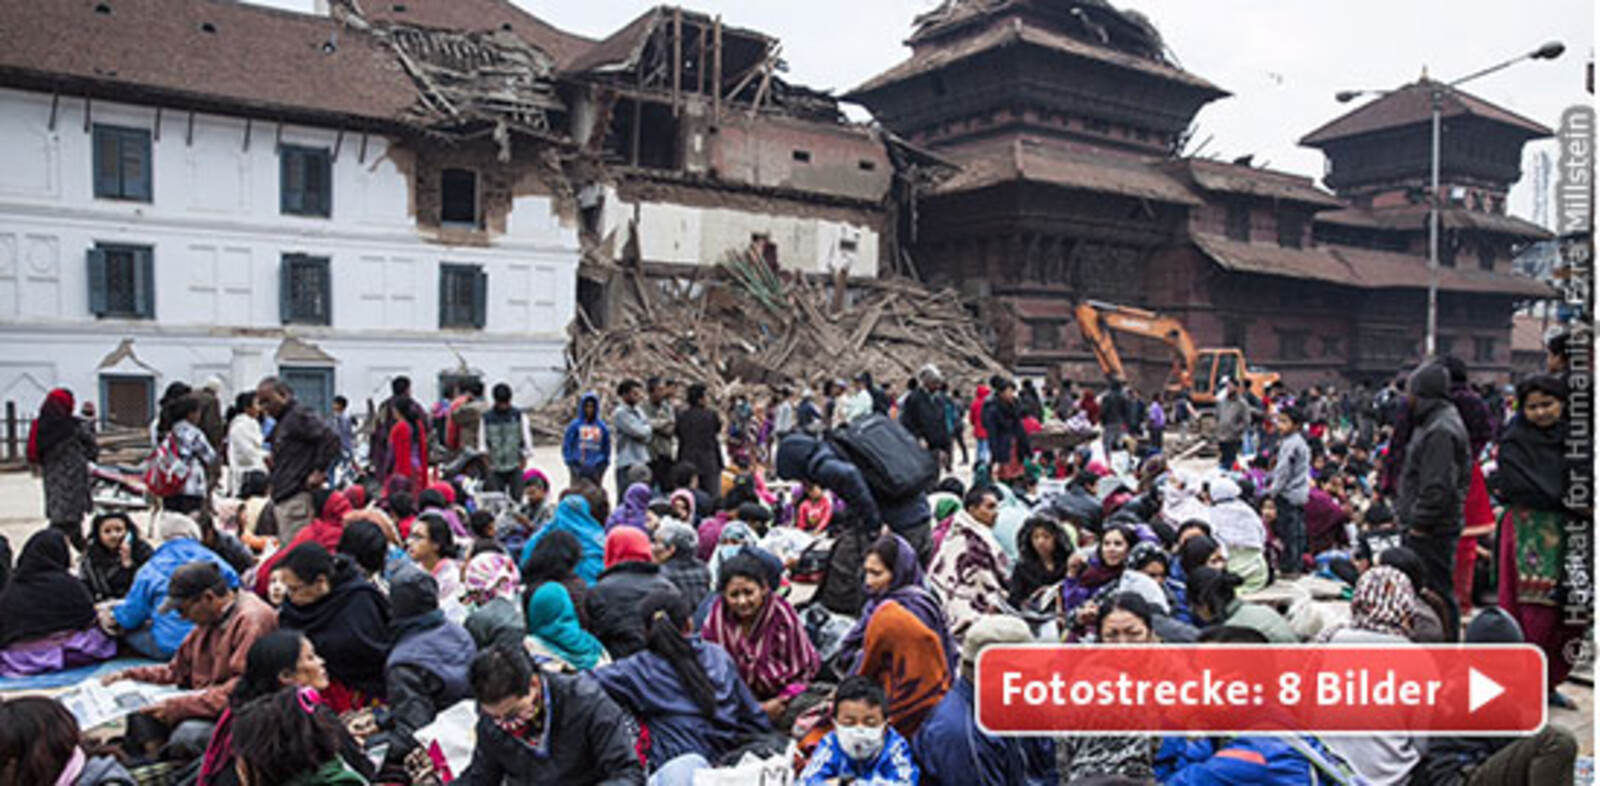 Ein verheerendes Erdbeben der Stärke 7,8 erschütterte den Himalaya-Staat Nepal und verursachte immense Schäden. Sekunden veränderten das Leben von Millionen Menschen. Das Epizentrum des Bebens lag nur 80 Kilometer von der Hauptstadt Kathmandu entfernt